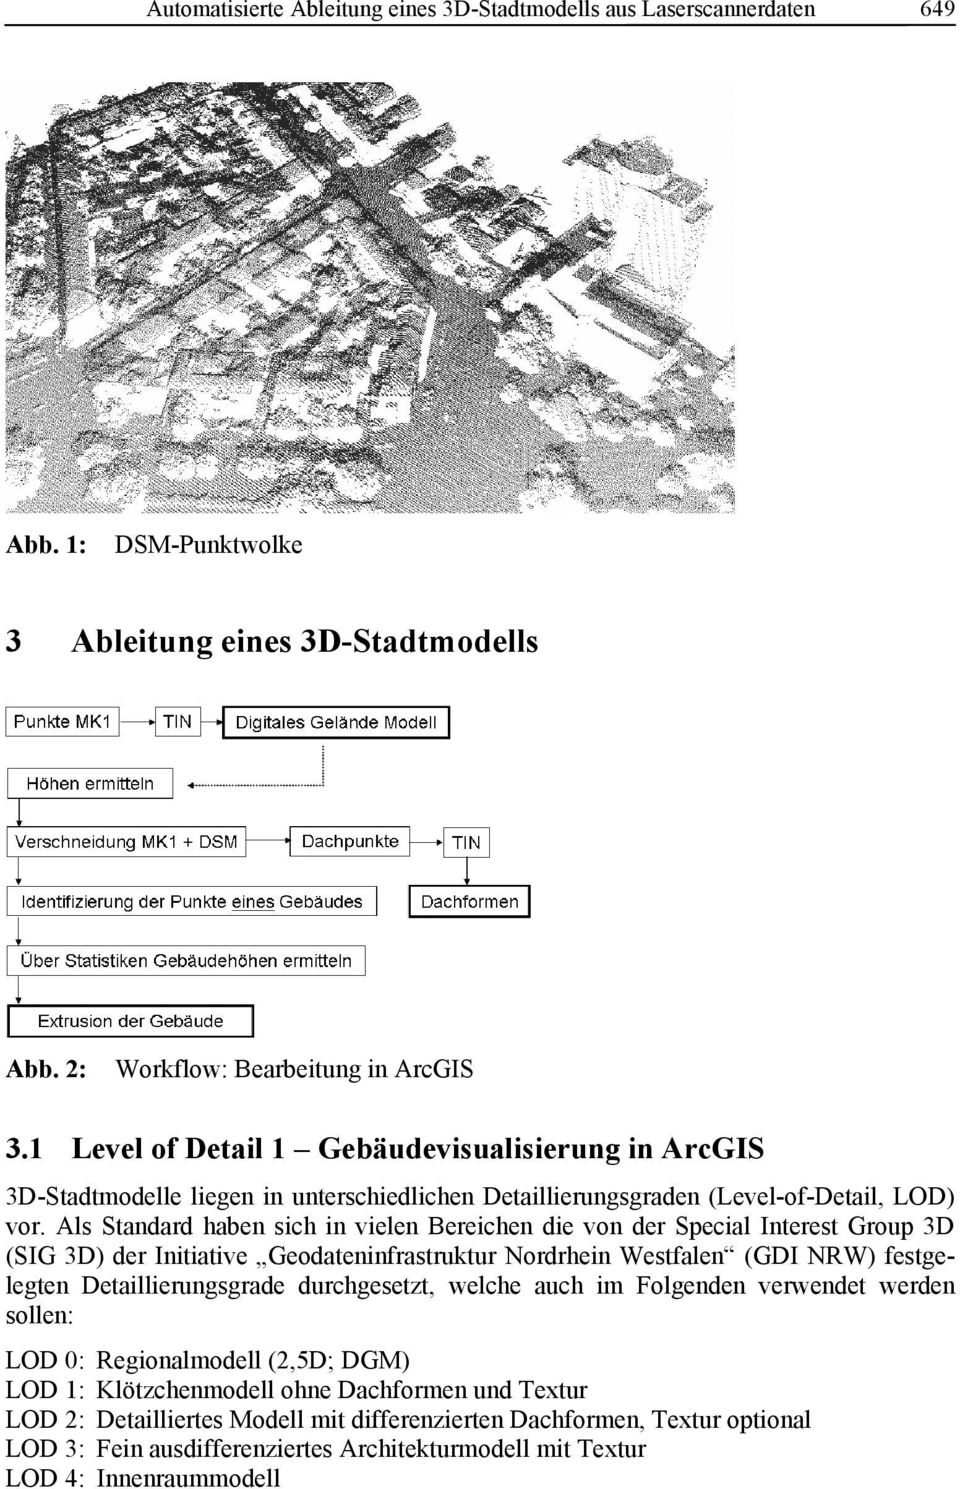 Als Standard haben sich in vielen Bereichen die von der Special Interest Group 3D (SIG 3D) der Initiative Geodateninfrastruktur Nordrhein Westfalen (GDI NRW) festgelegten Detaillierungsgrade